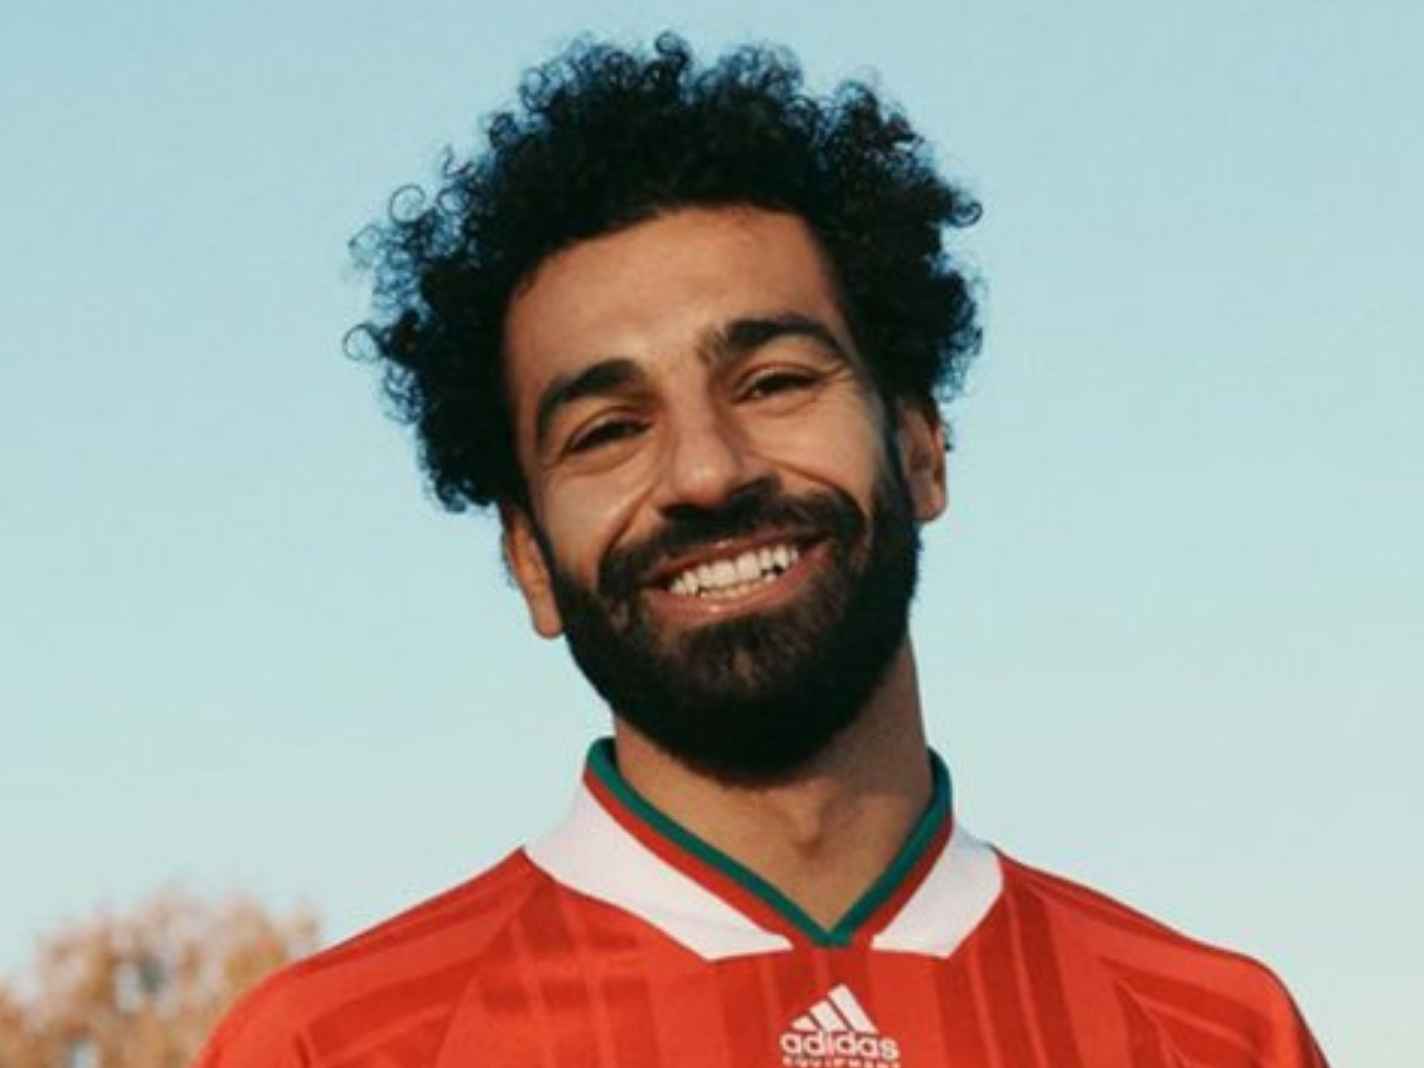 Mohamed Salah in GQ photoshoot